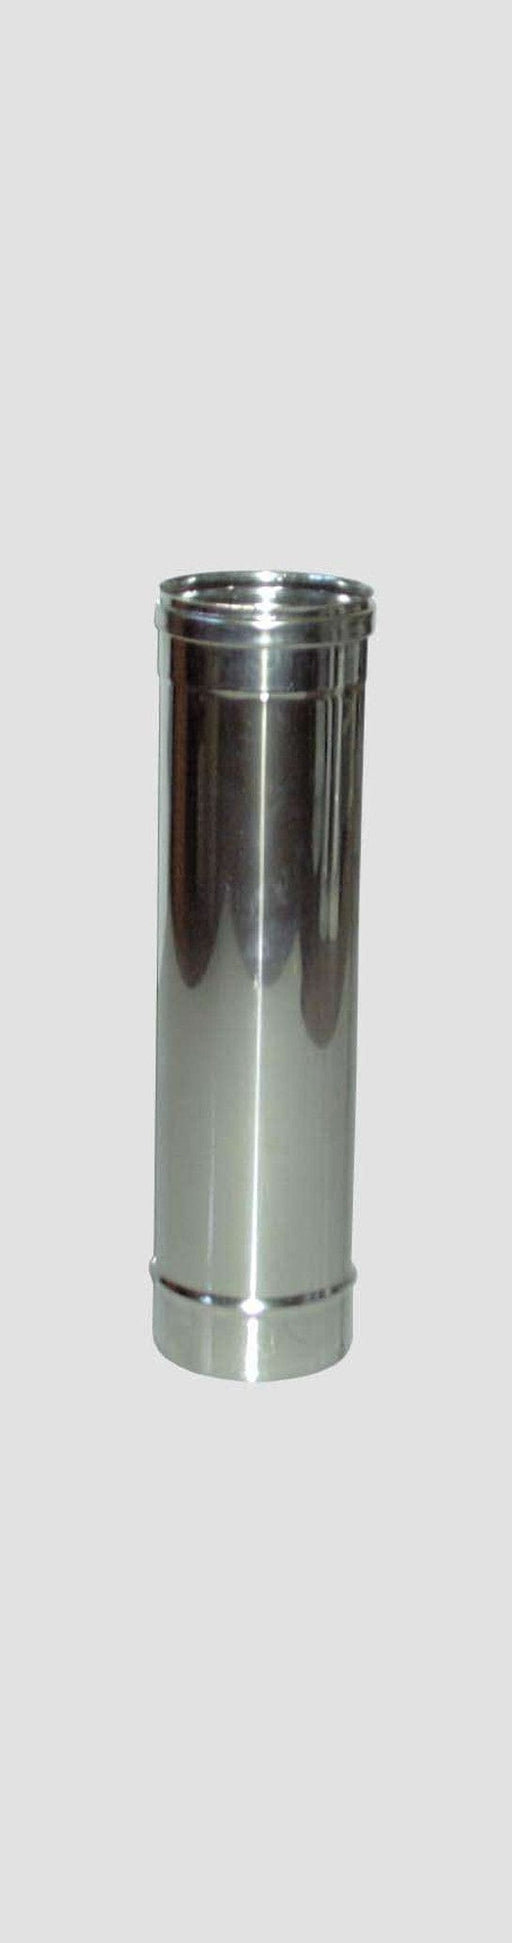 Tubo Diritto Inox AISI 304 per Stufe - Altezza 50 cm - Diametro  8 cm MillStore (2499315)